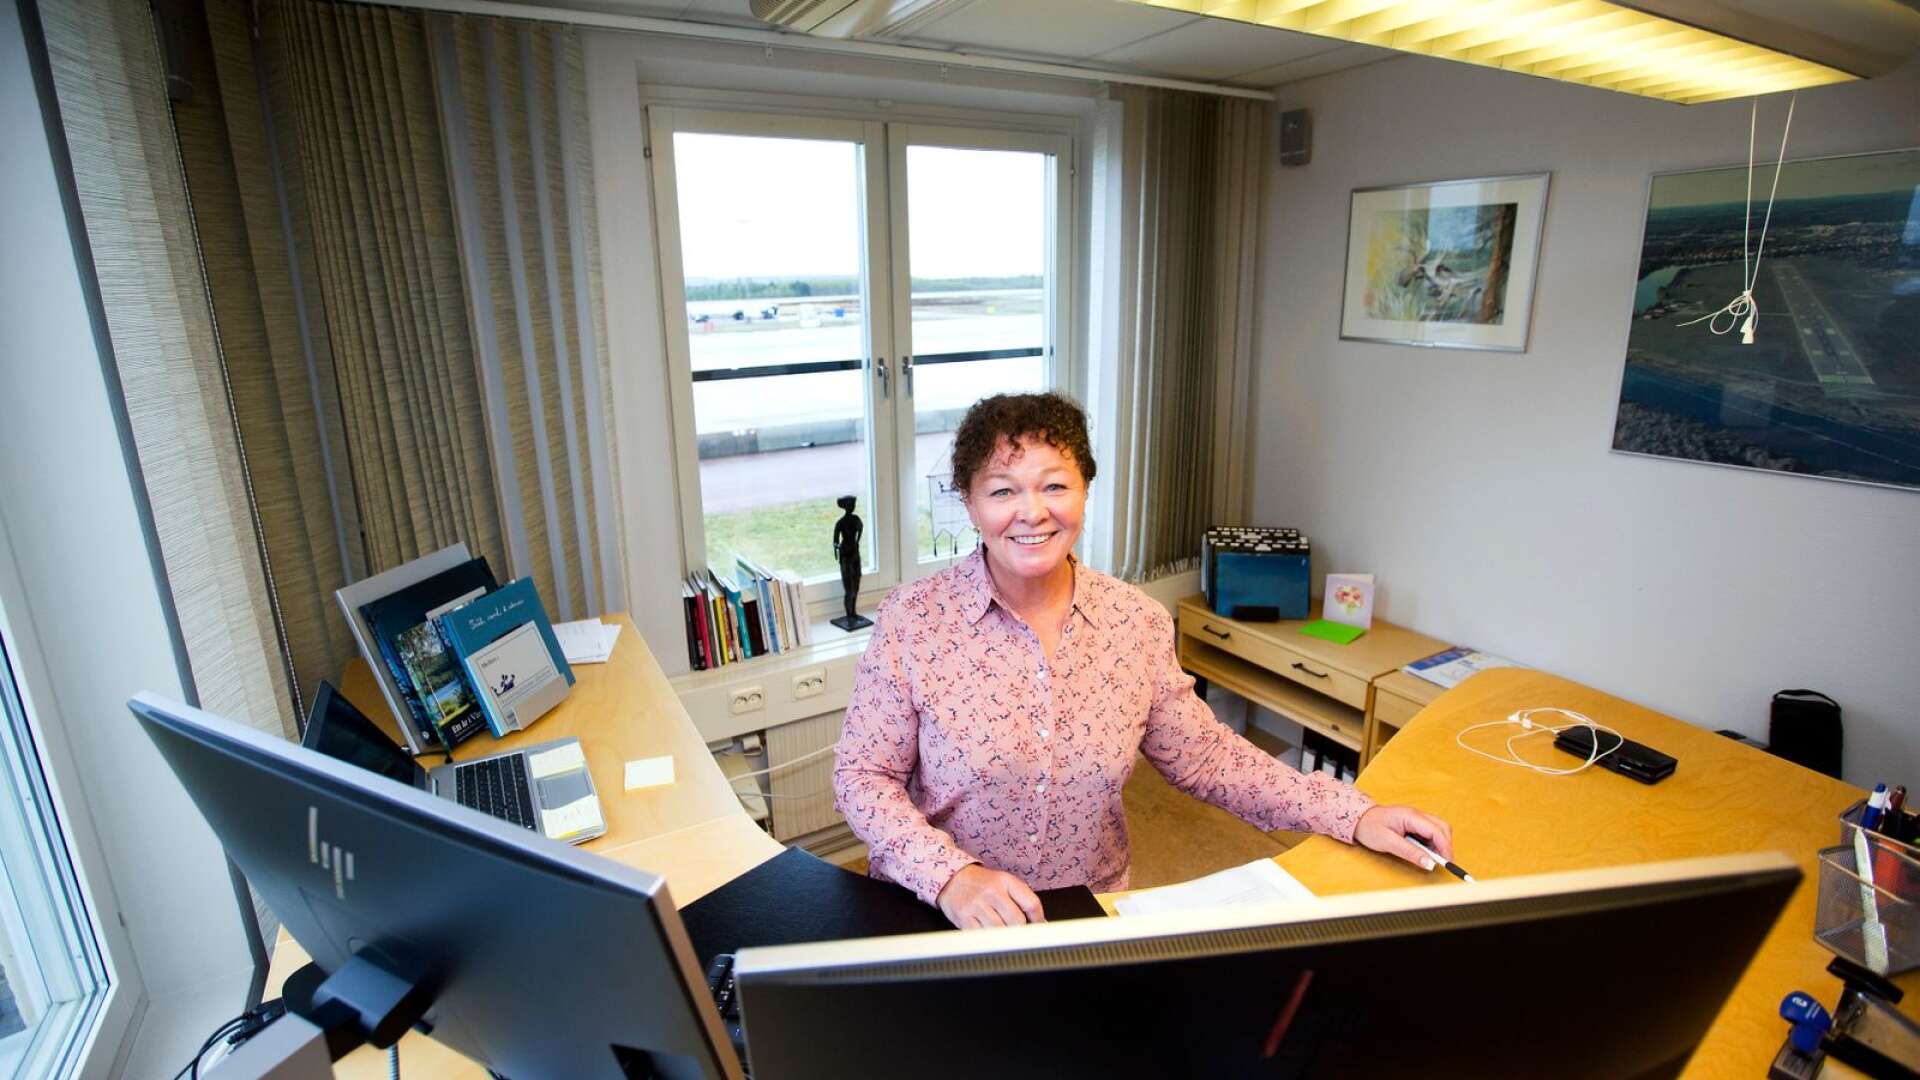 Den 1 april gjorde Camilla Sperling sin första dag som ny vd för Karlstads flygplats, Med erfarenheter både som pilot och administrativ från flygbranschen ska hon vända de negativa trafiksiffrorna på flygplatsen.